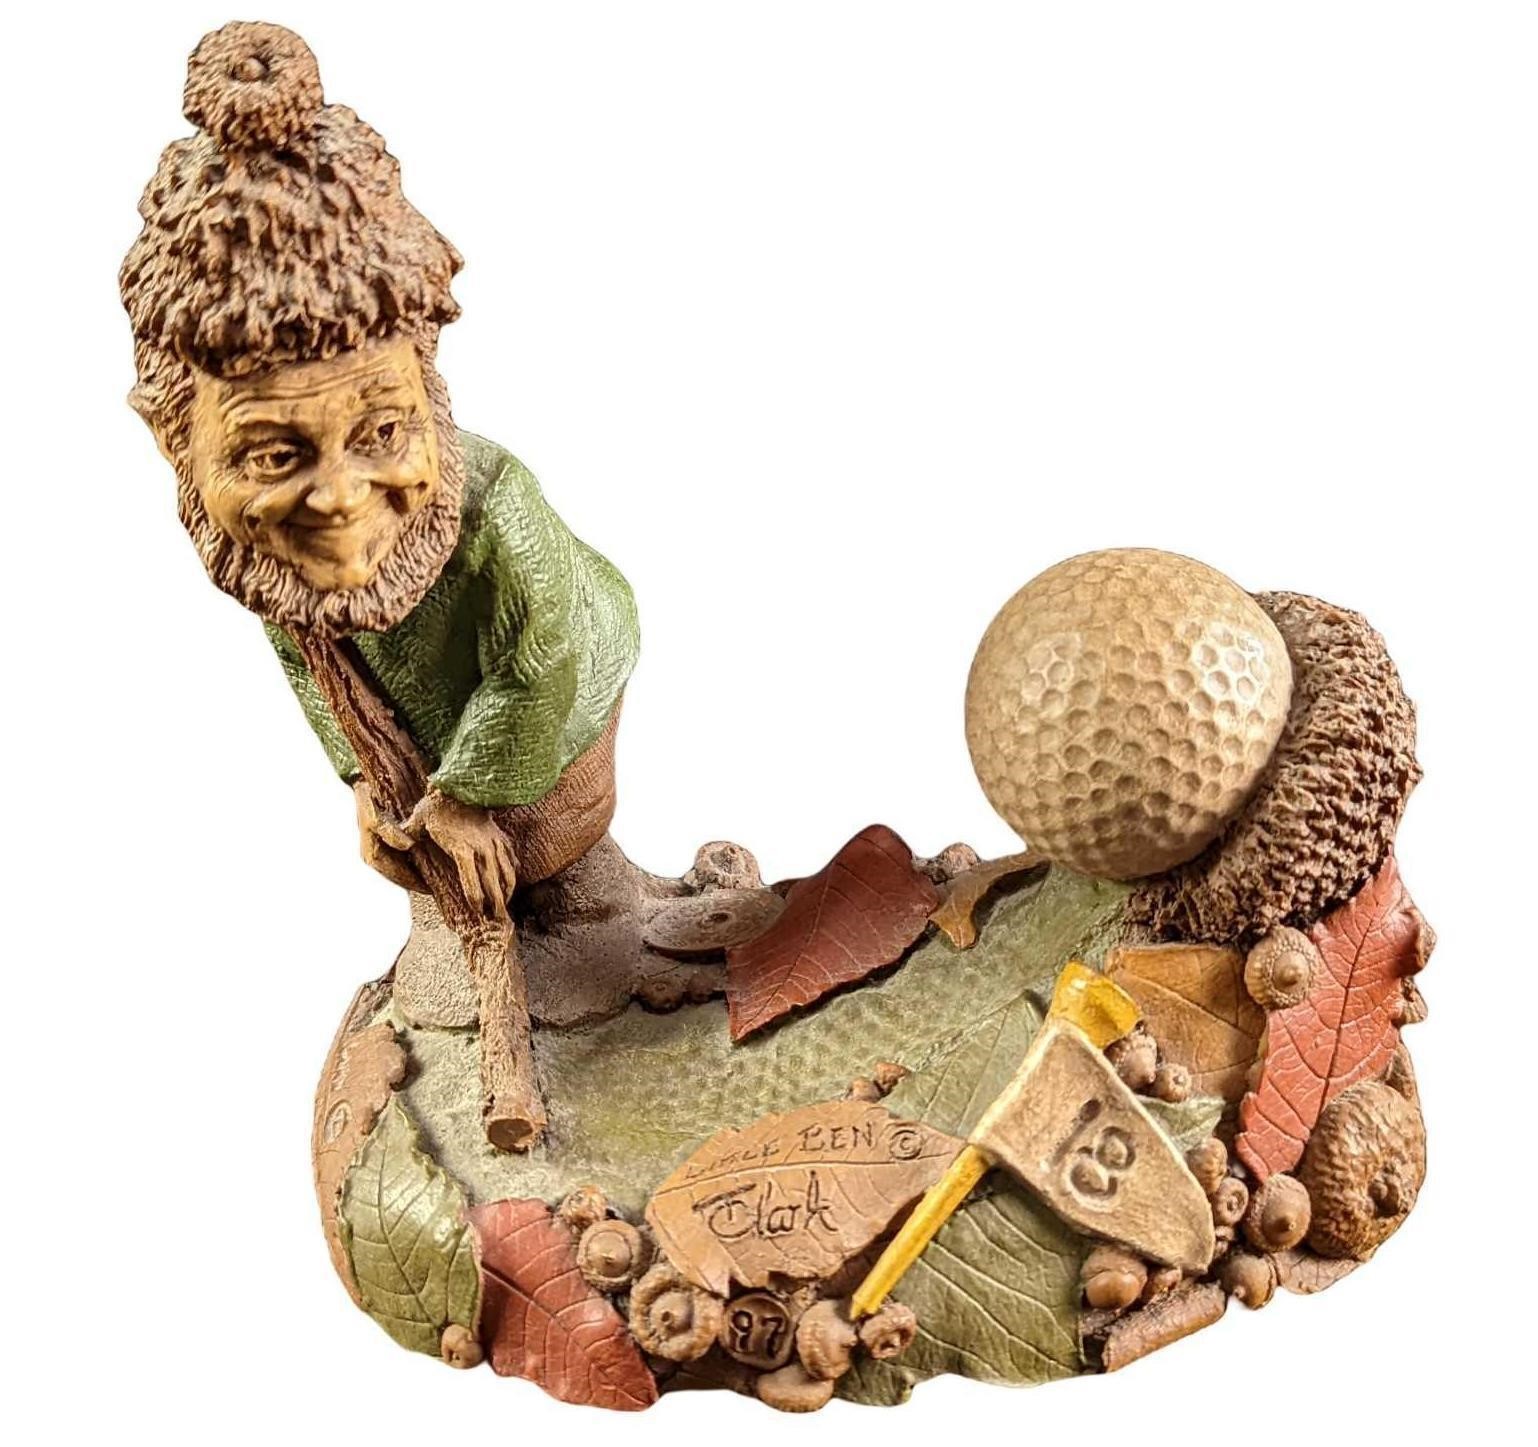 Thomas Clark's "Little Ben" Golfer Figurine